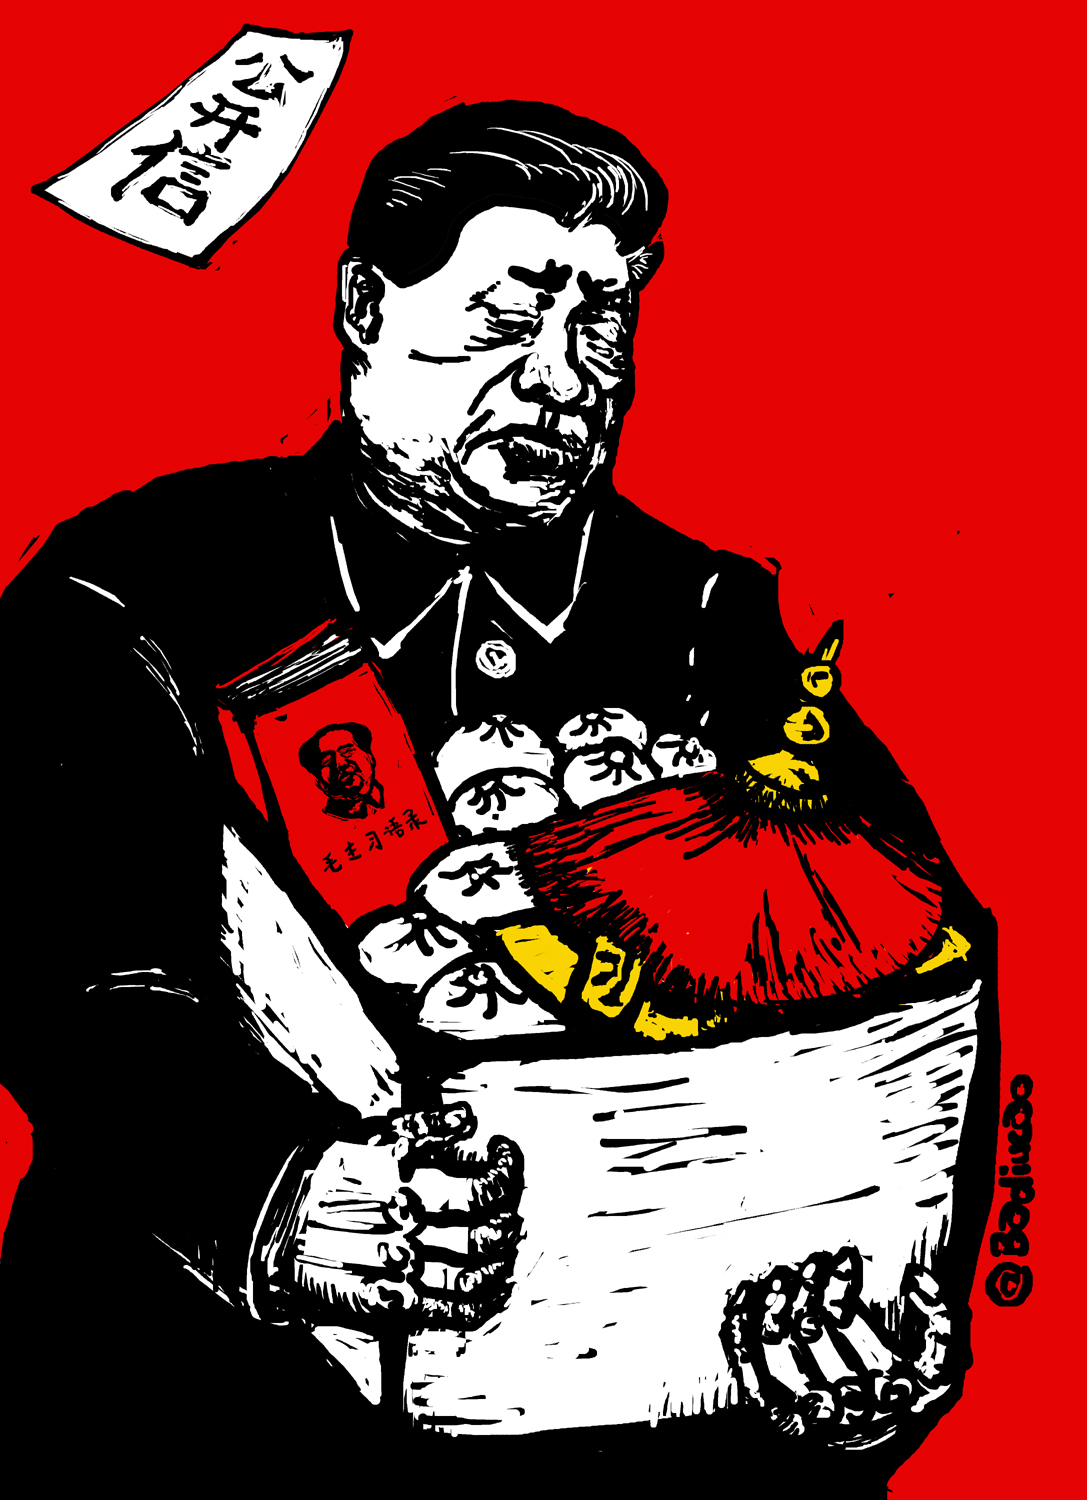 Badiucao (巴丢草): Xi Jinping, You’re Fired!